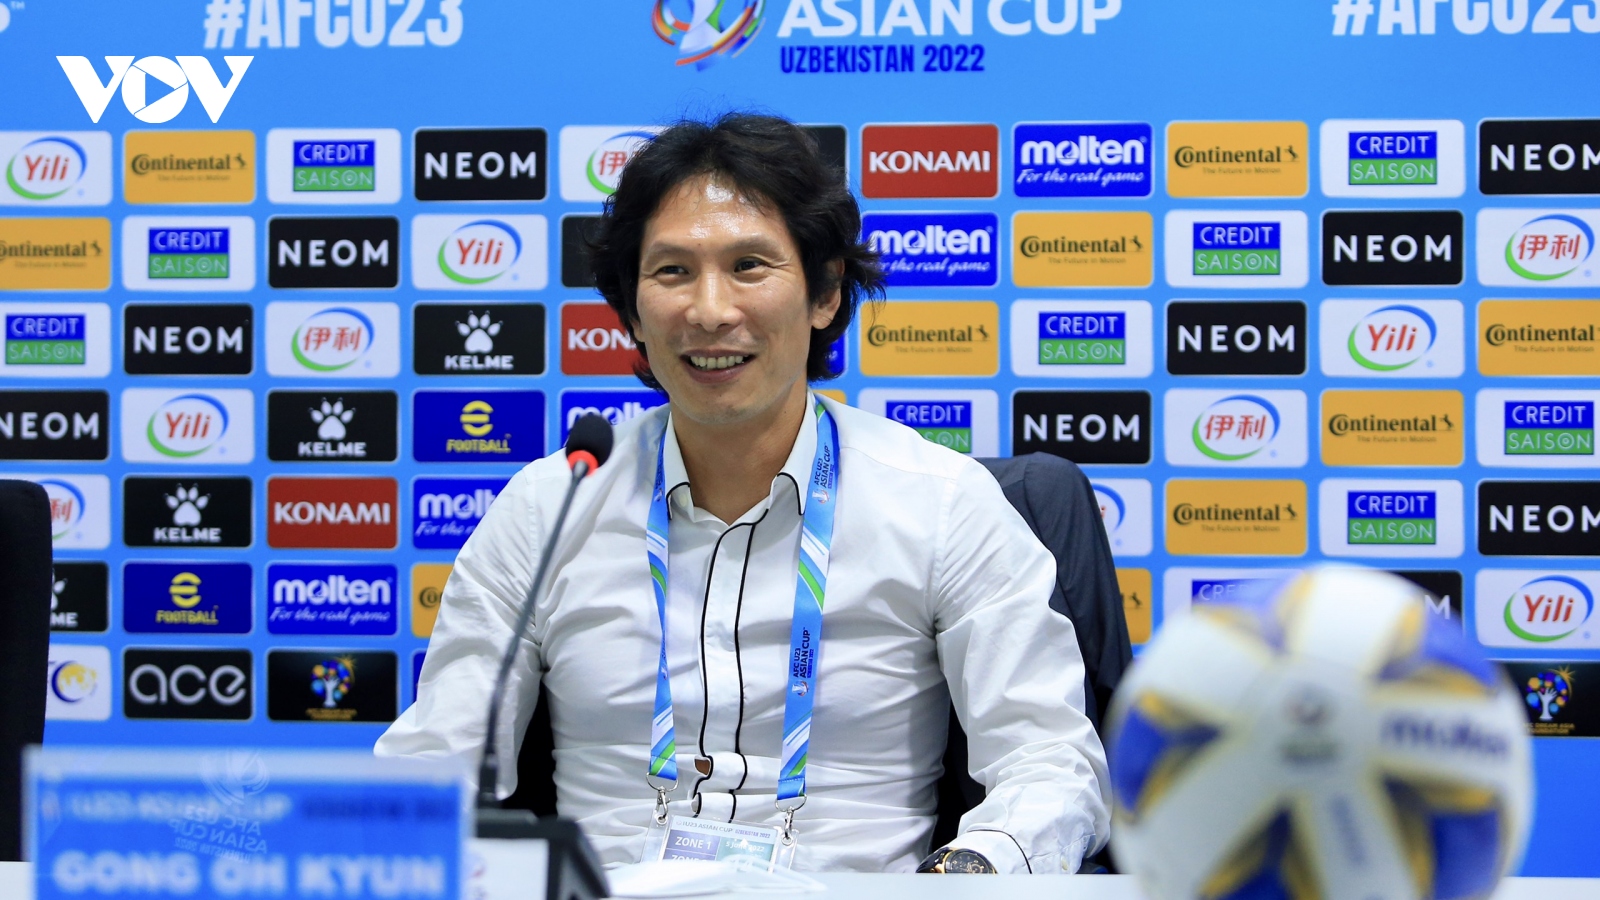 HLV Gong Oh Kyun nói gì khi cùng U23 Việt Nam vào tứ kết U23 châu Á 2022?